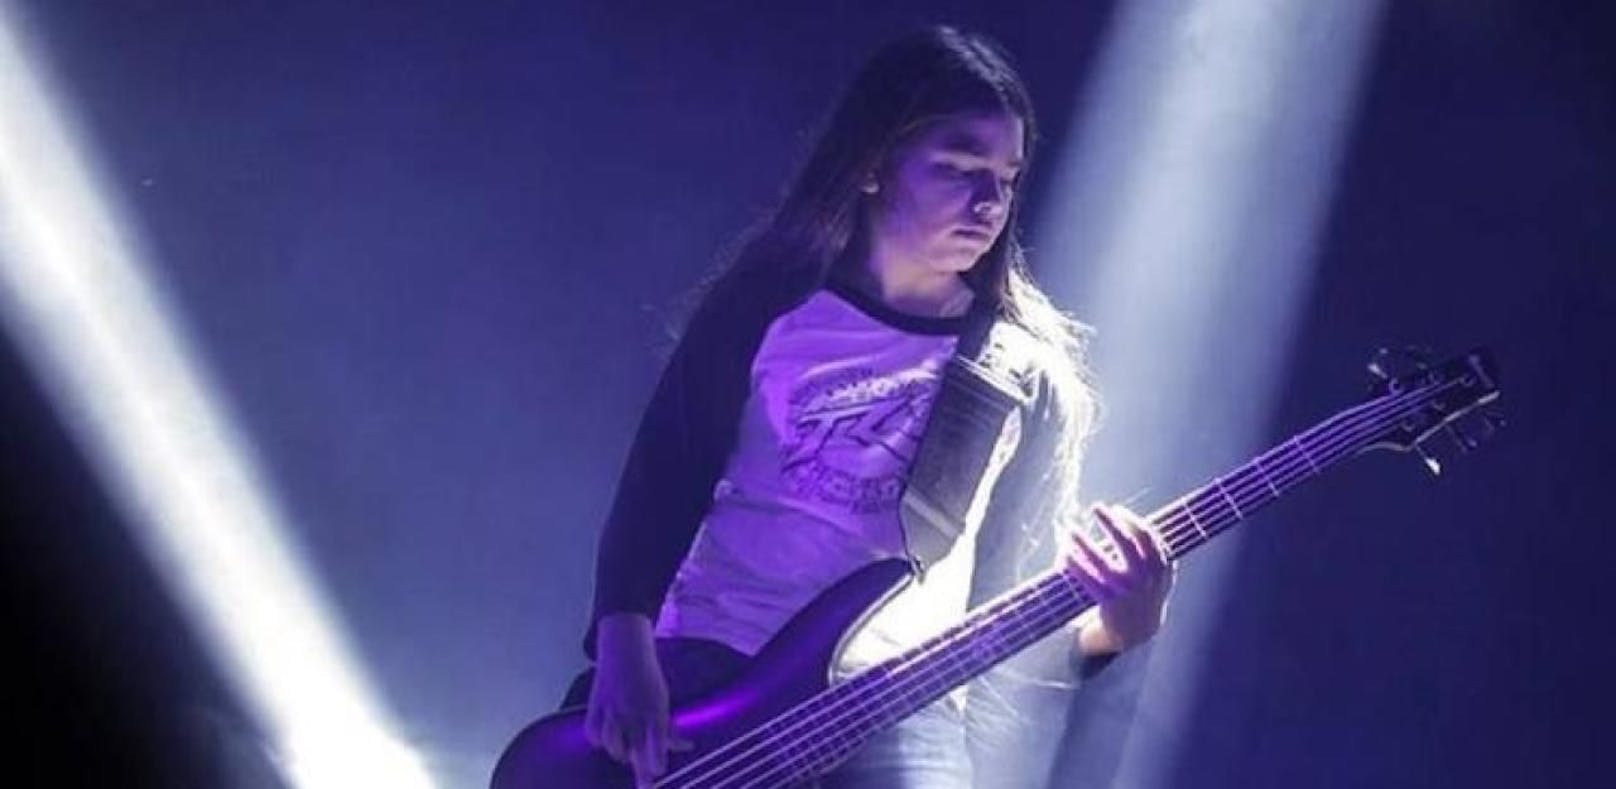 12-jähriger Bassist gibt Bühnen-Debüt bei Korn